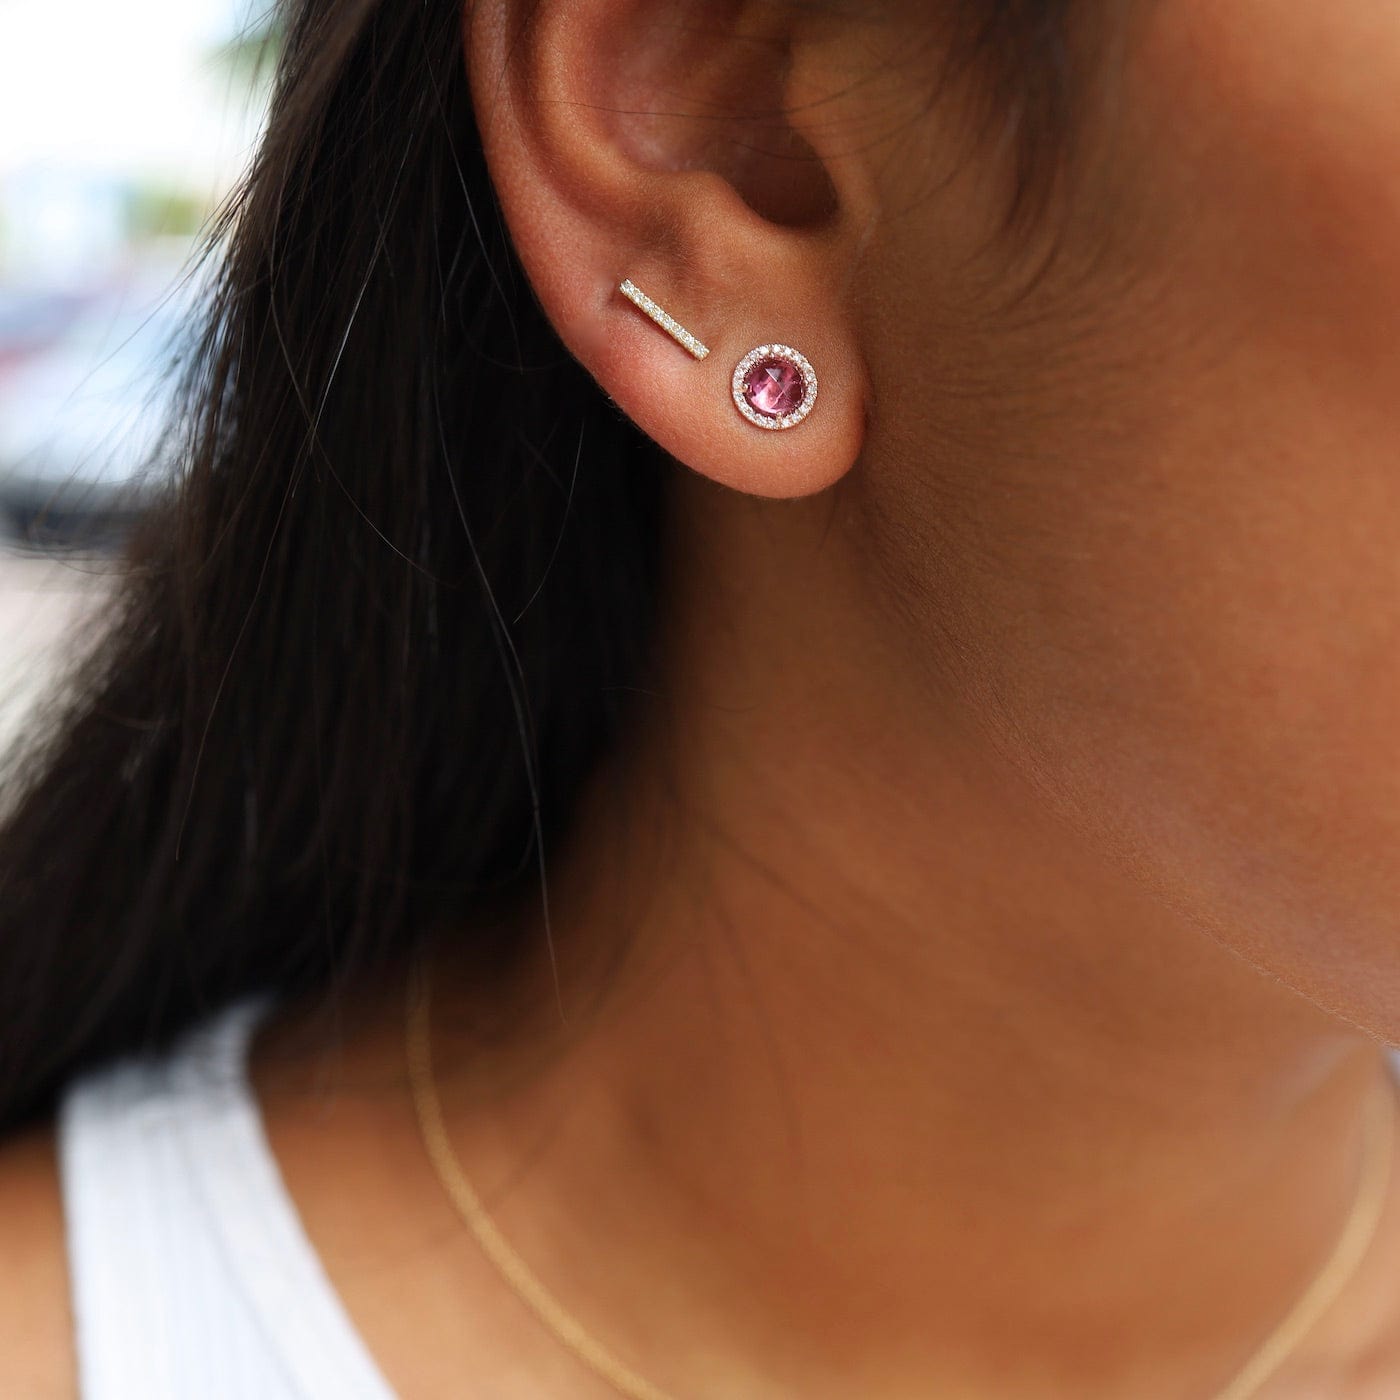 EAR-14K Rose Cut Pink Tourmaline Earrings - 14K Rose Gold